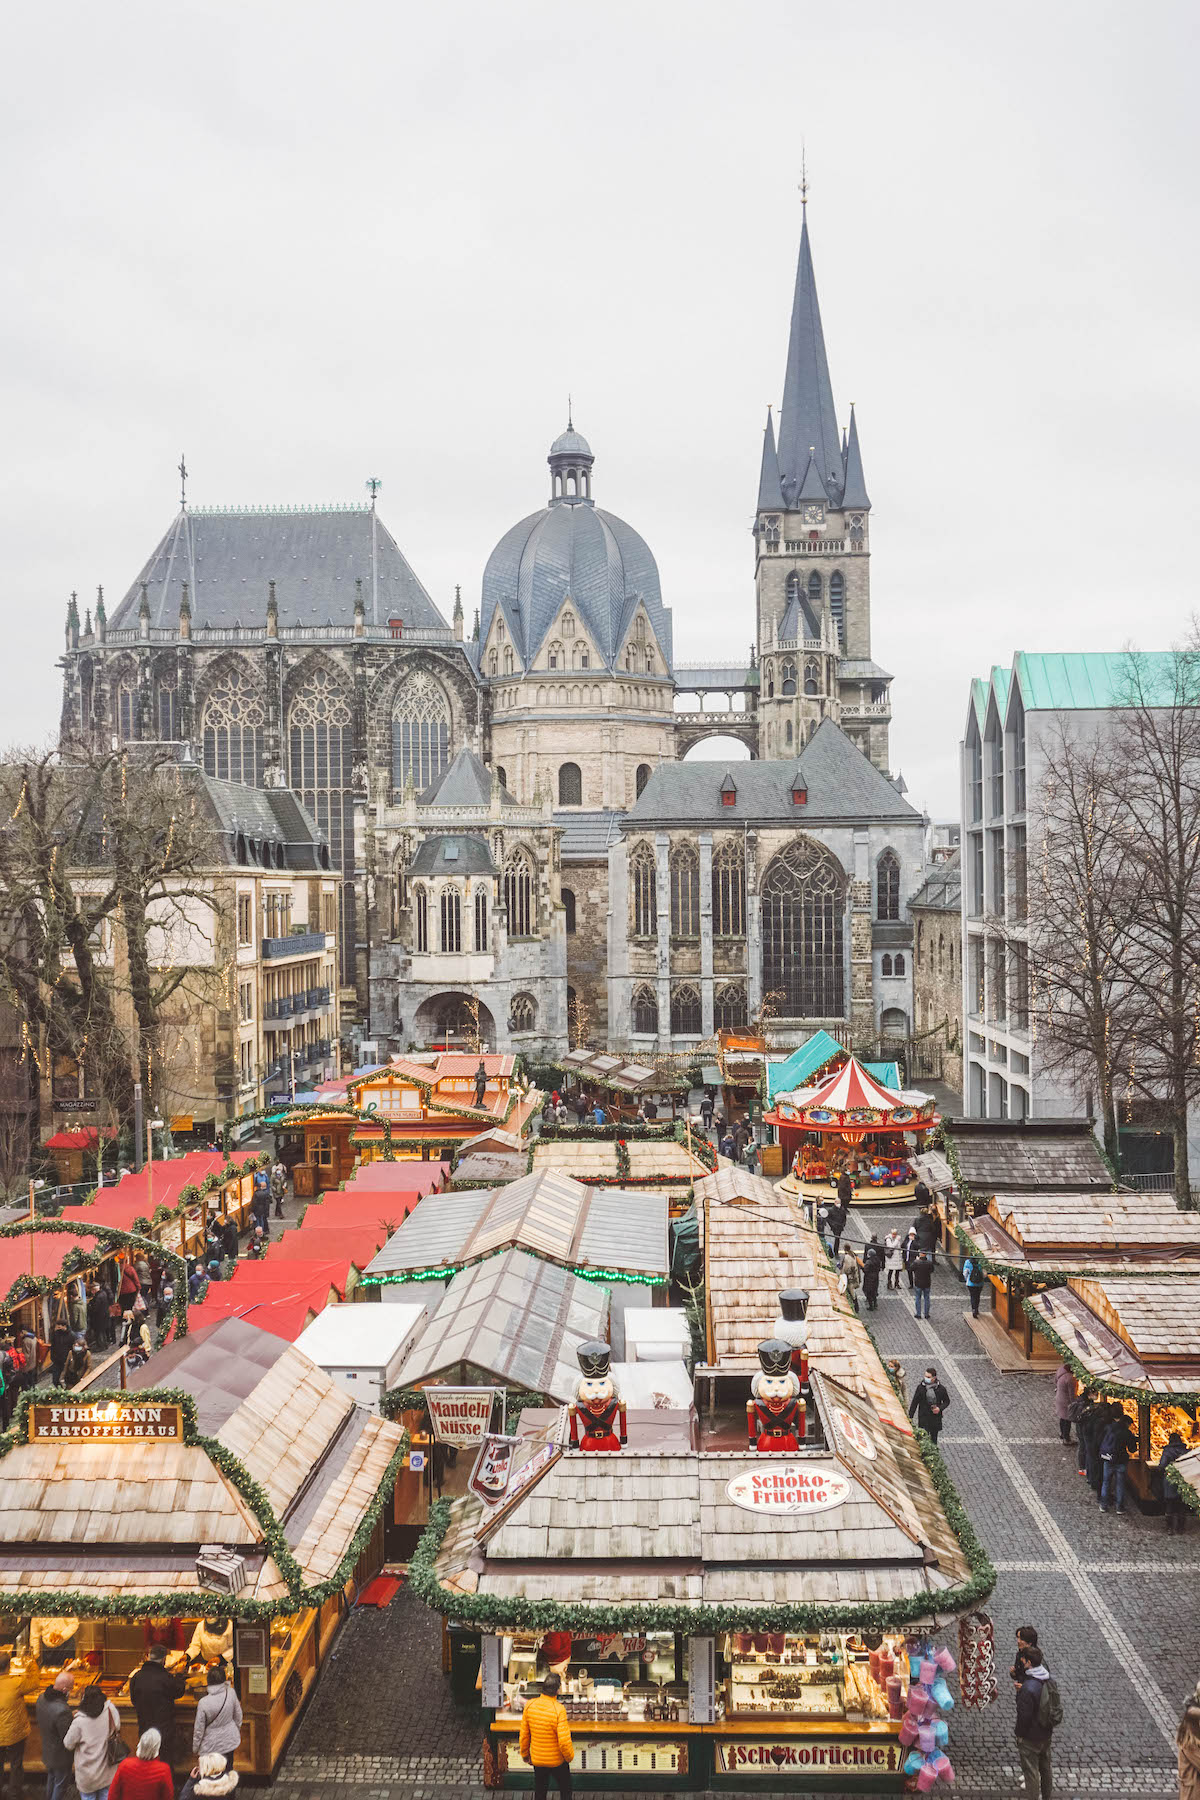 Aachen Christmas market seen from above